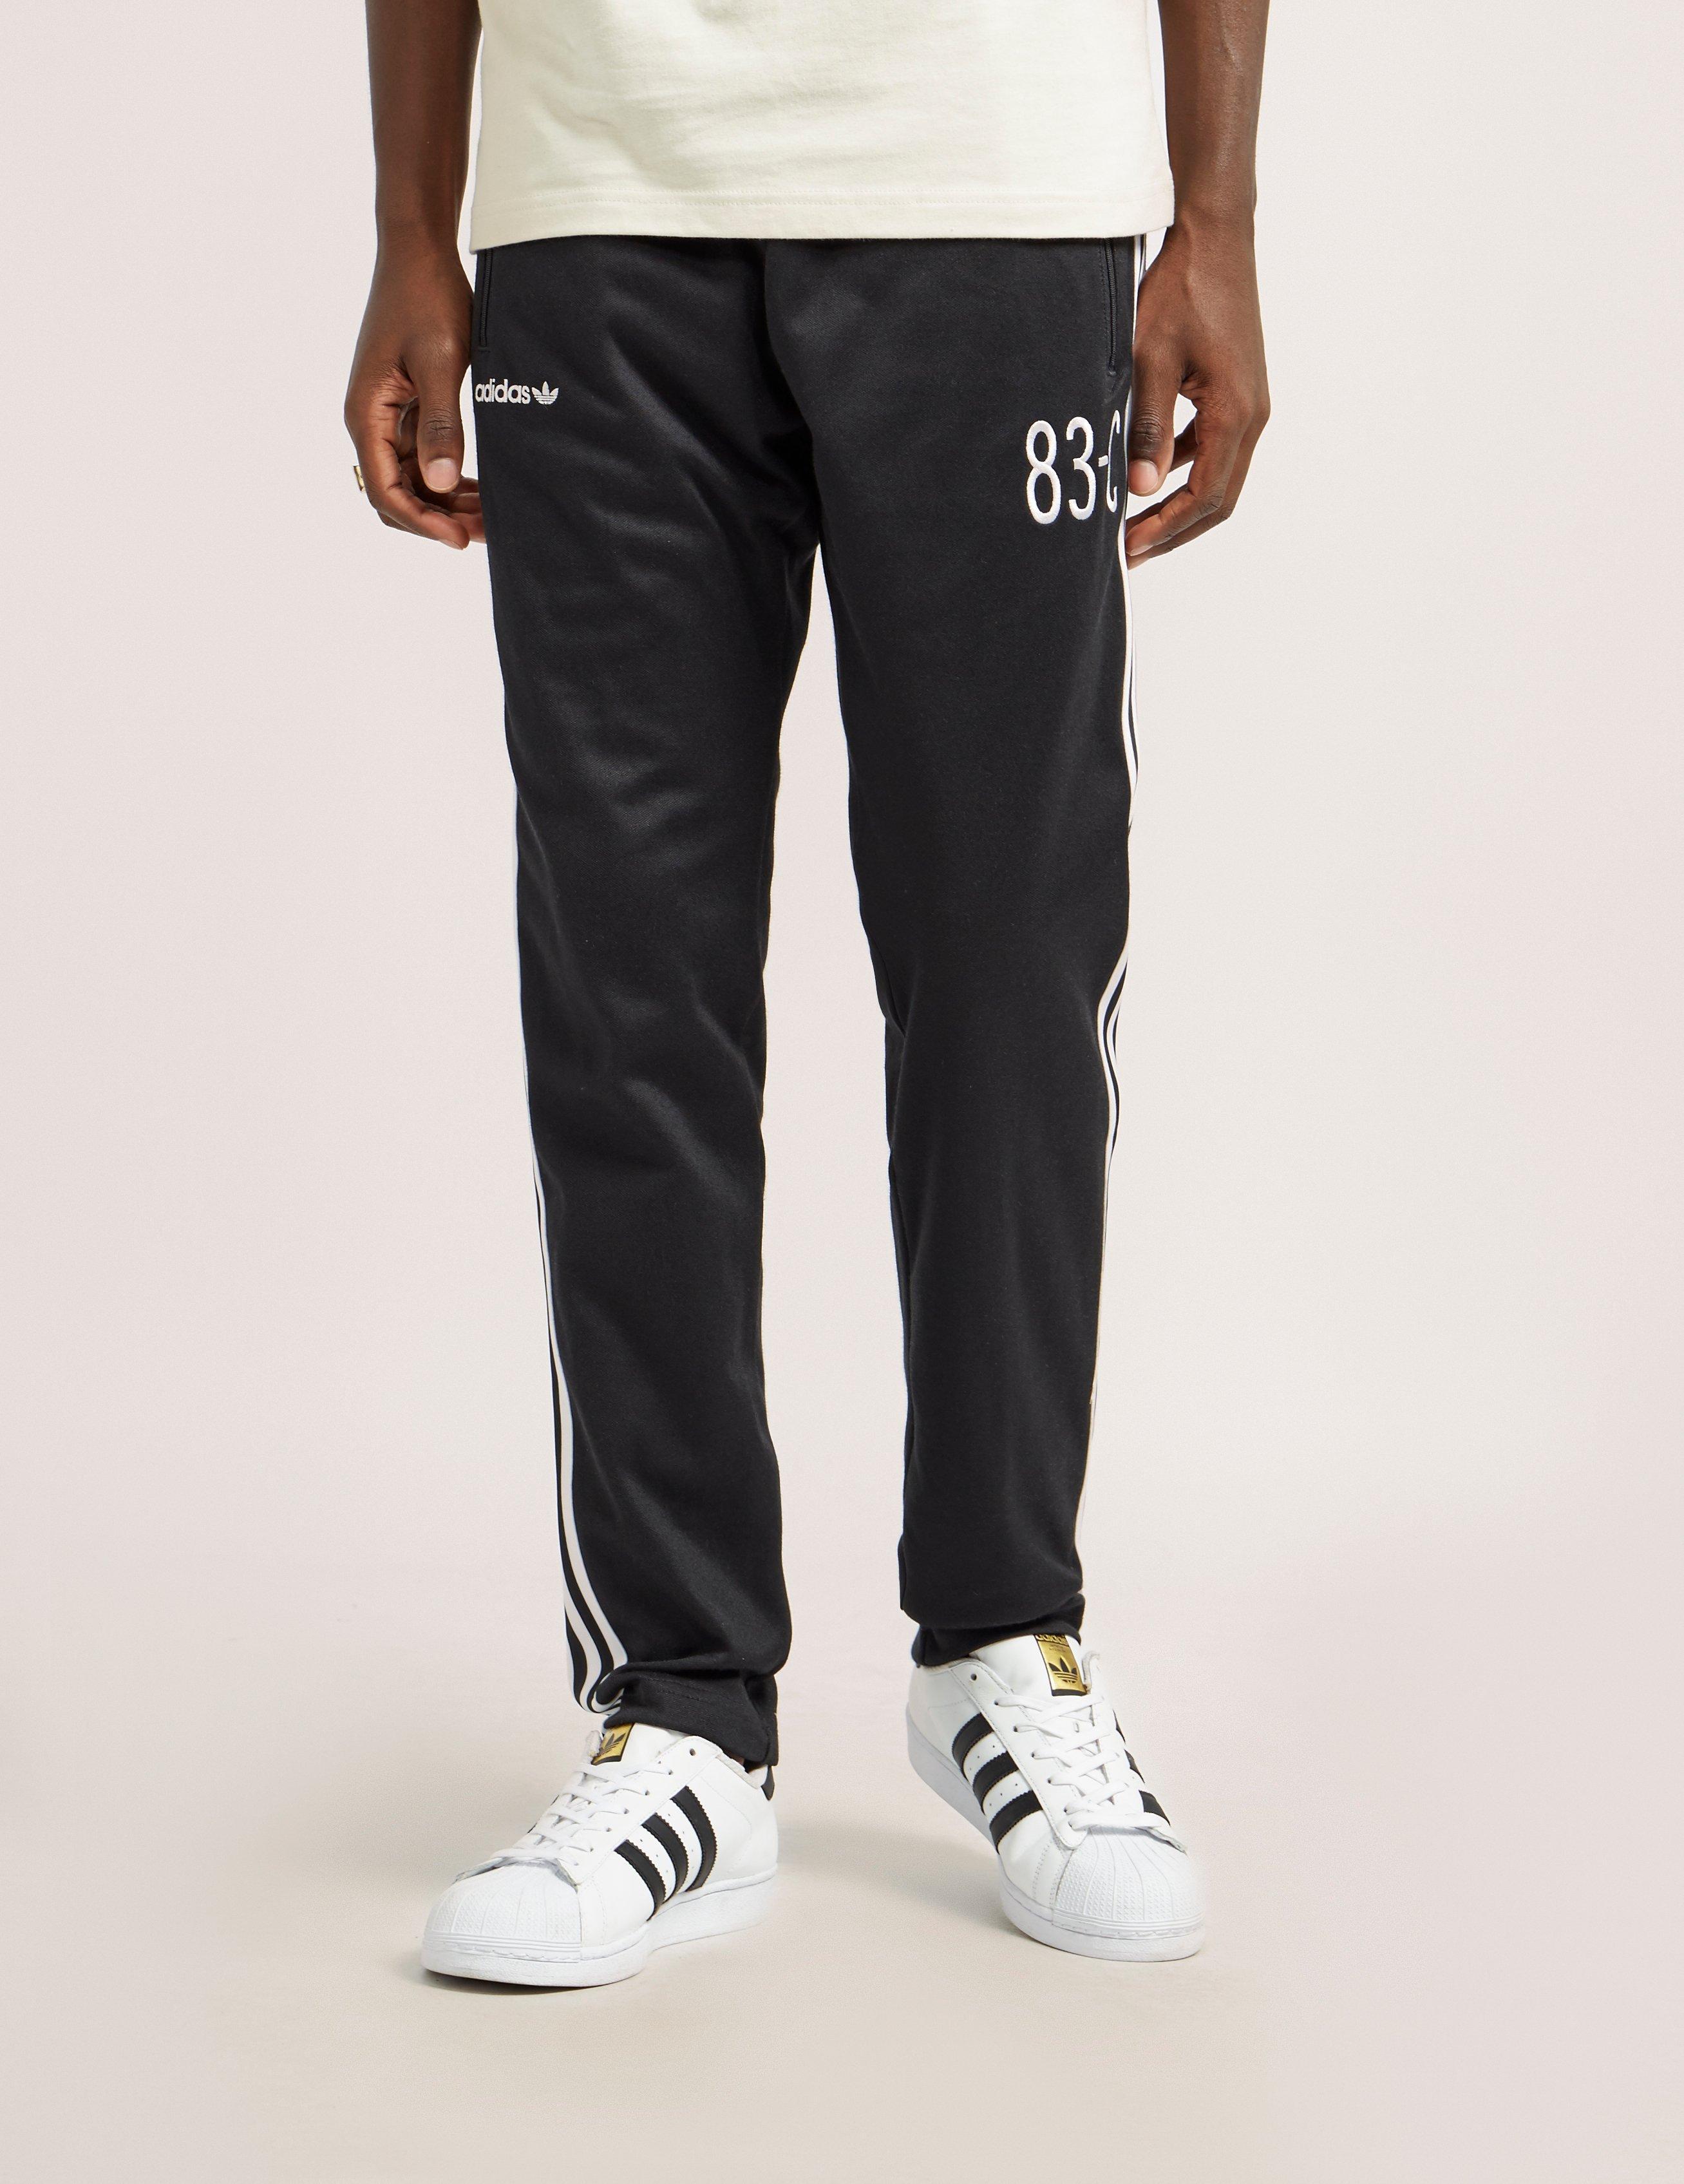 adidas Originals 83-c Track Pants in Black for Men - Lyst